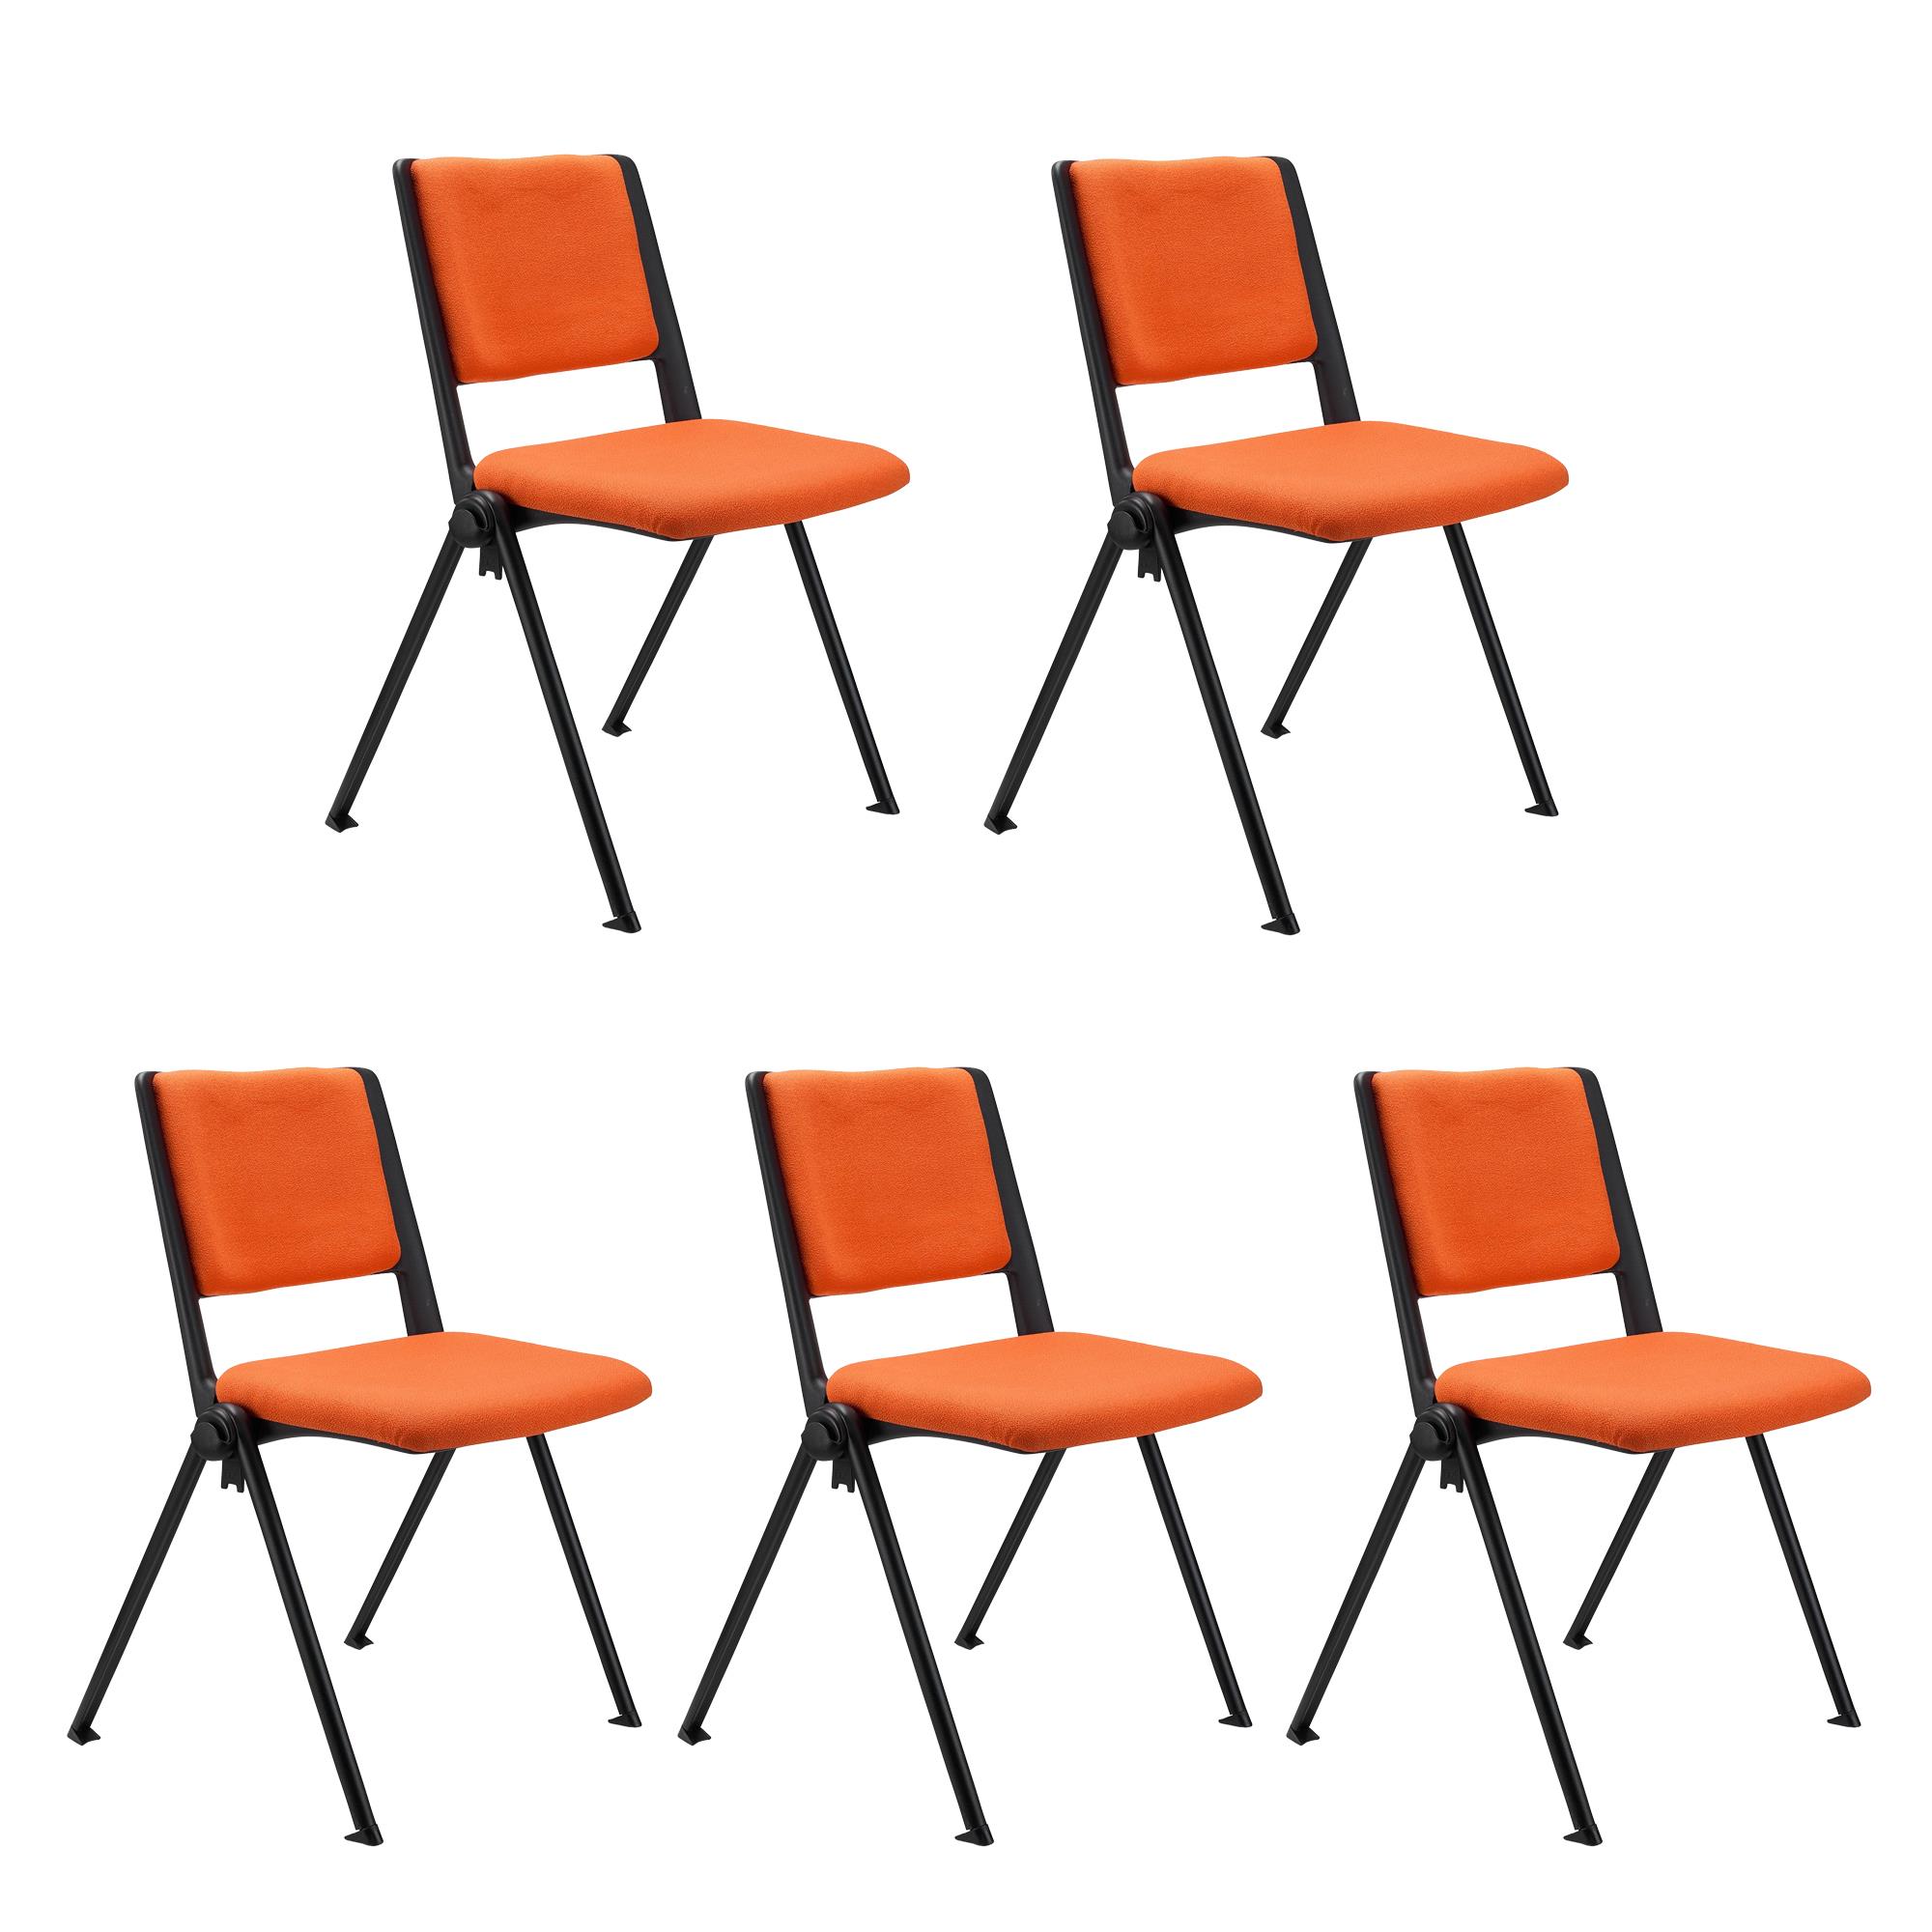 Im 5er-Set: Konferenzstuhl CARINA, stapel- und reihenverbindbar, schwarzes Stahlgestell, Stoffbezug Farbe Orange